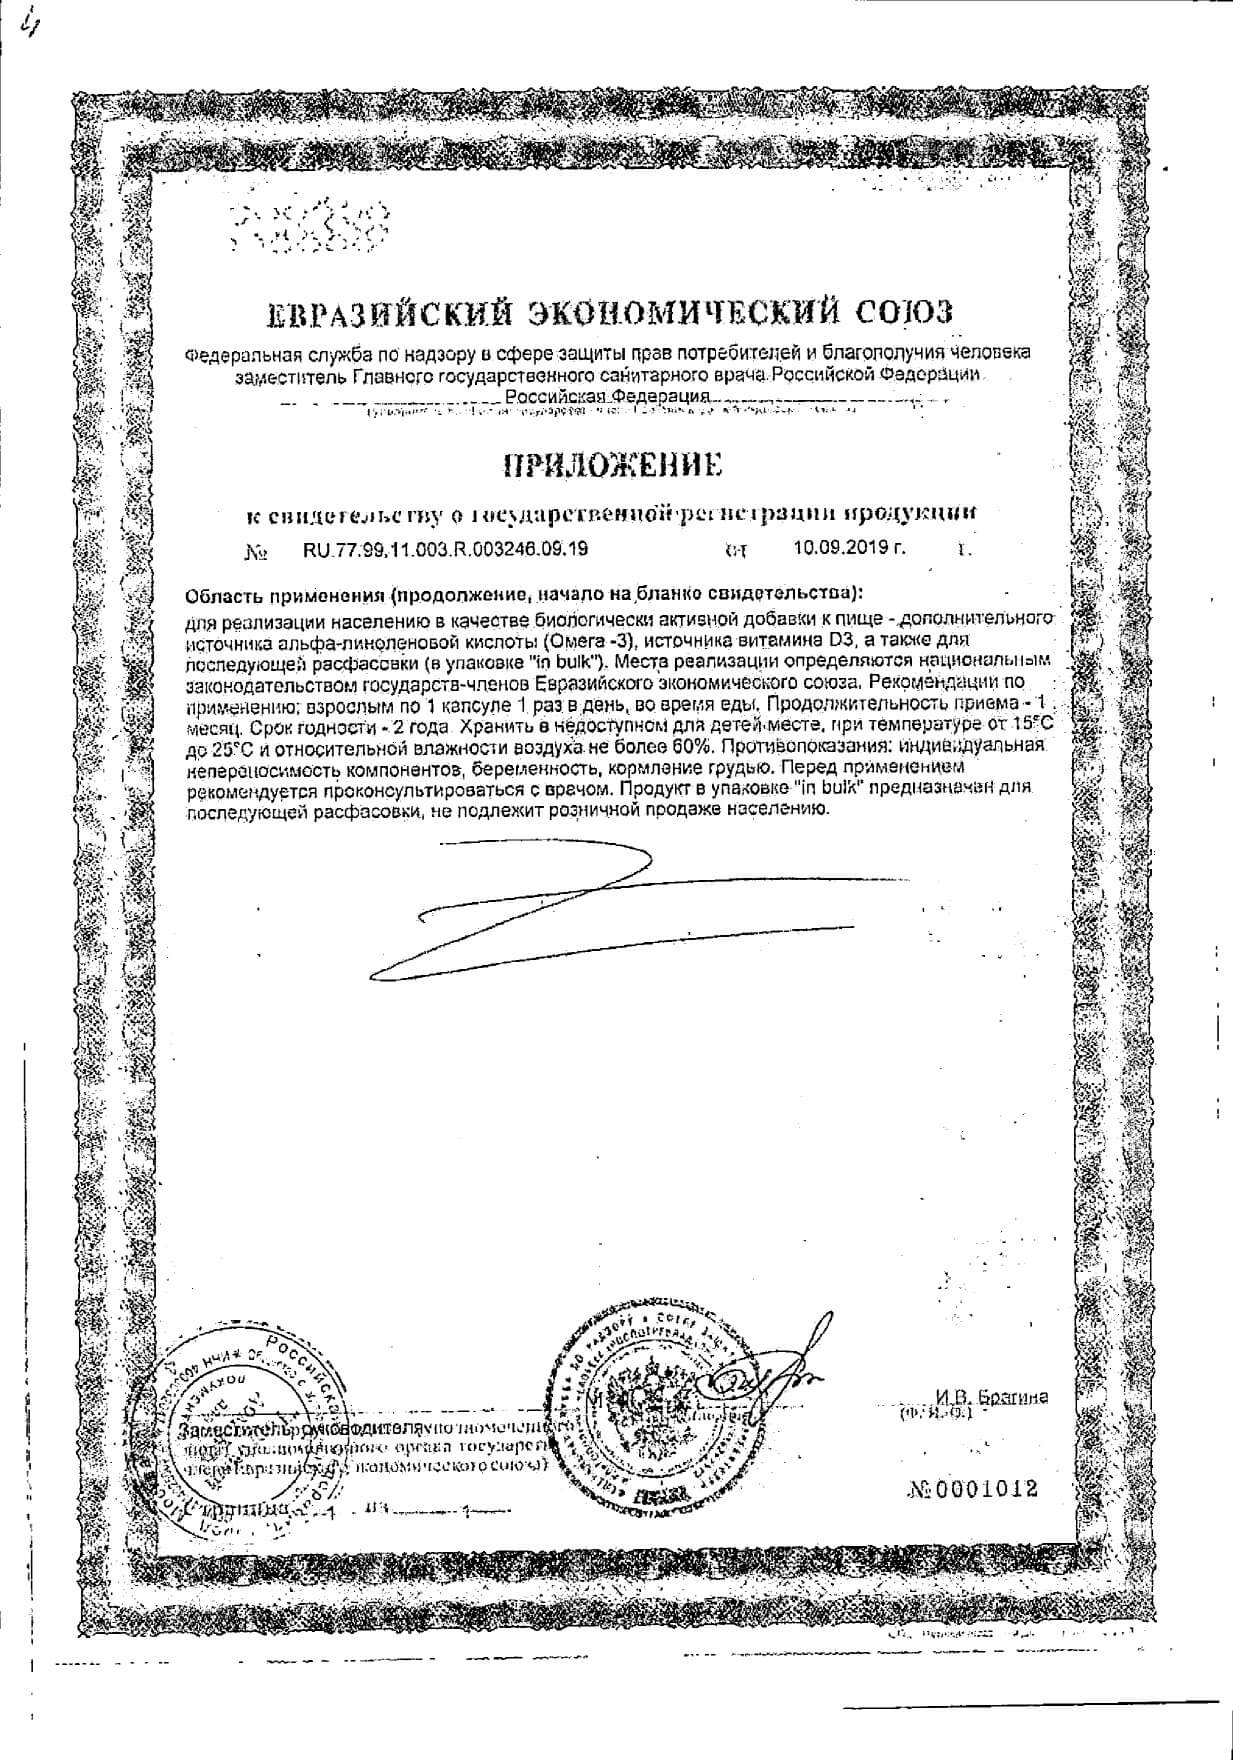 Кветрель Oмега-3+Д3-300% капсулы 30шт: сертификат